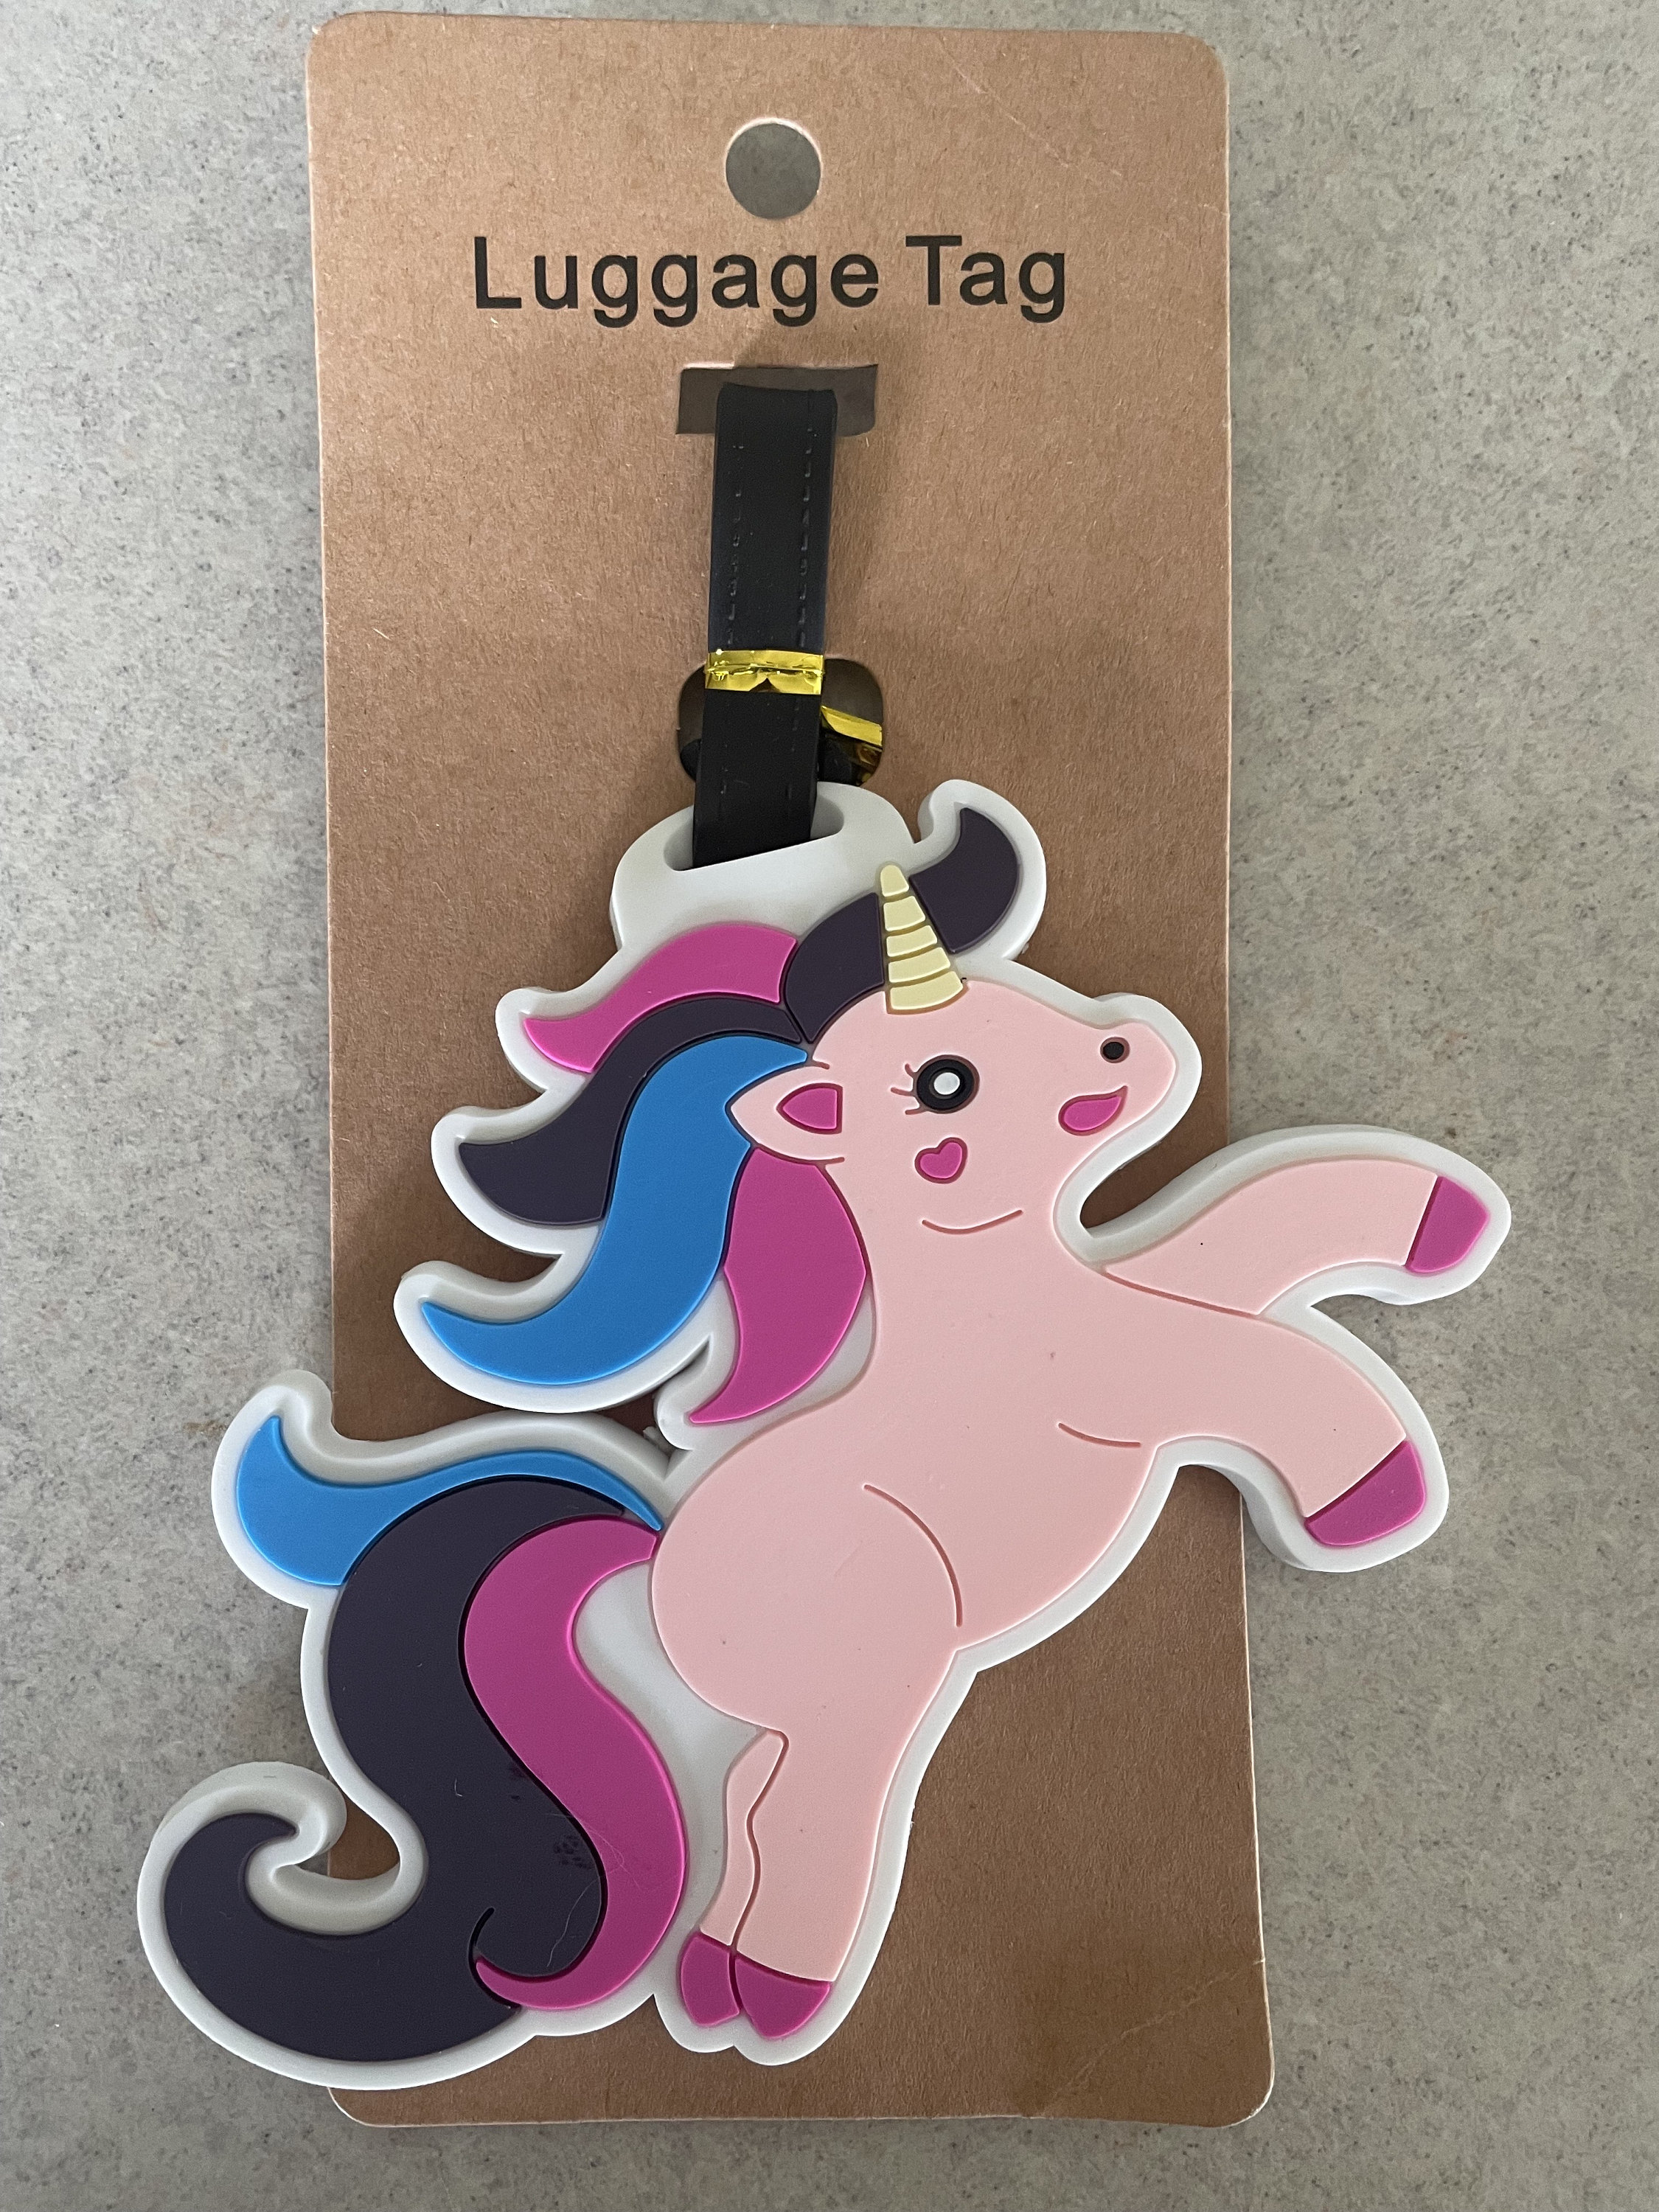 Unicorn Rainbow Travel Luggage Set – Glimmer Wish